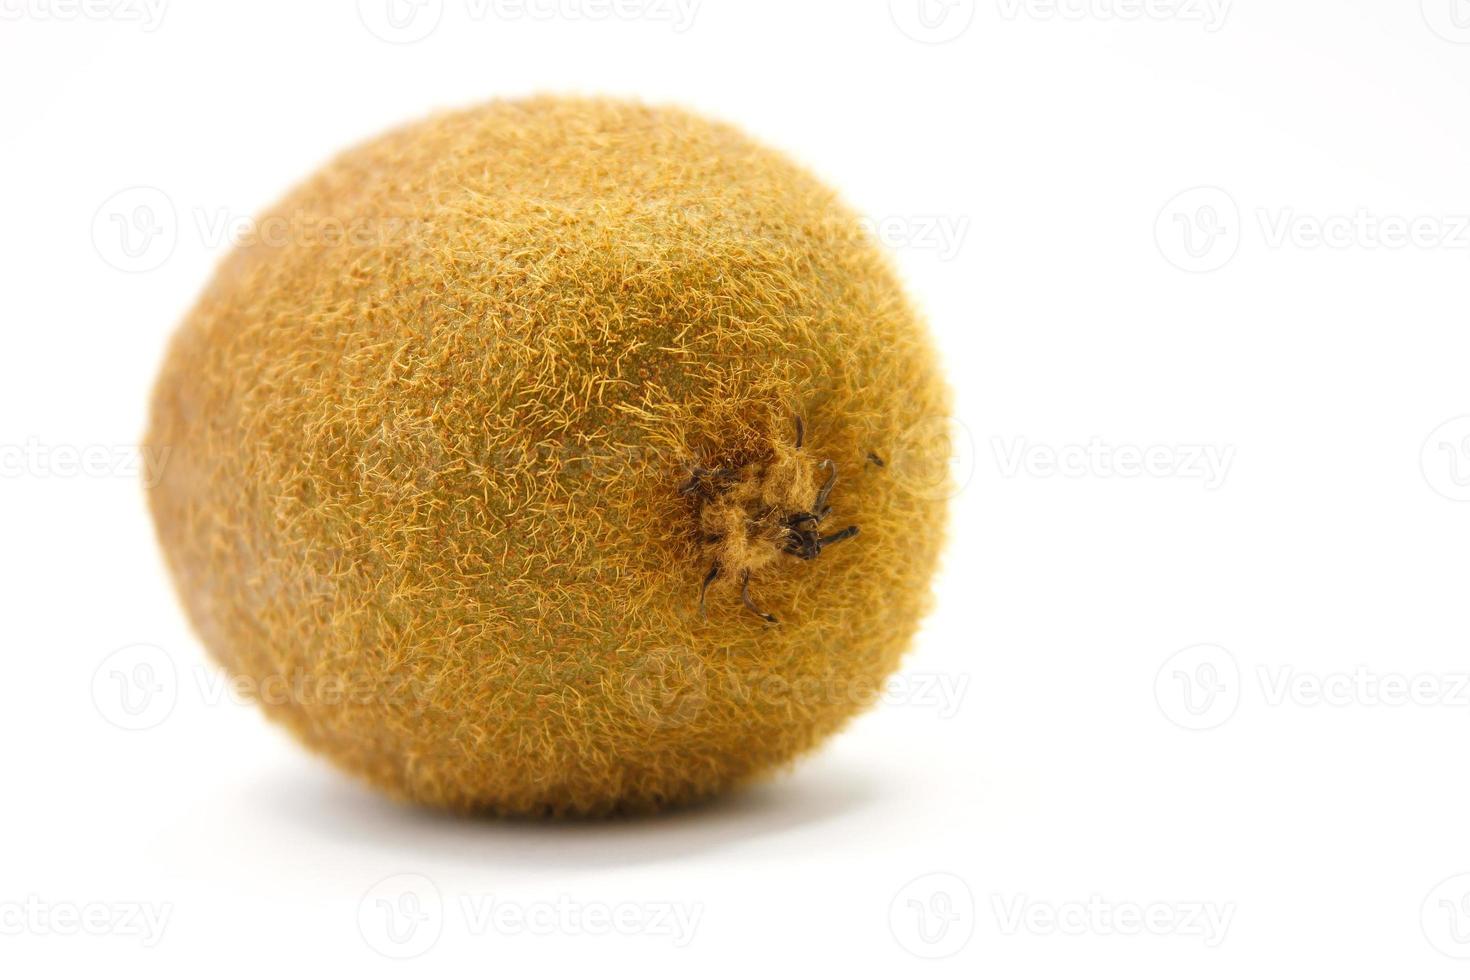 Kiwi fruit isolated on white background photo